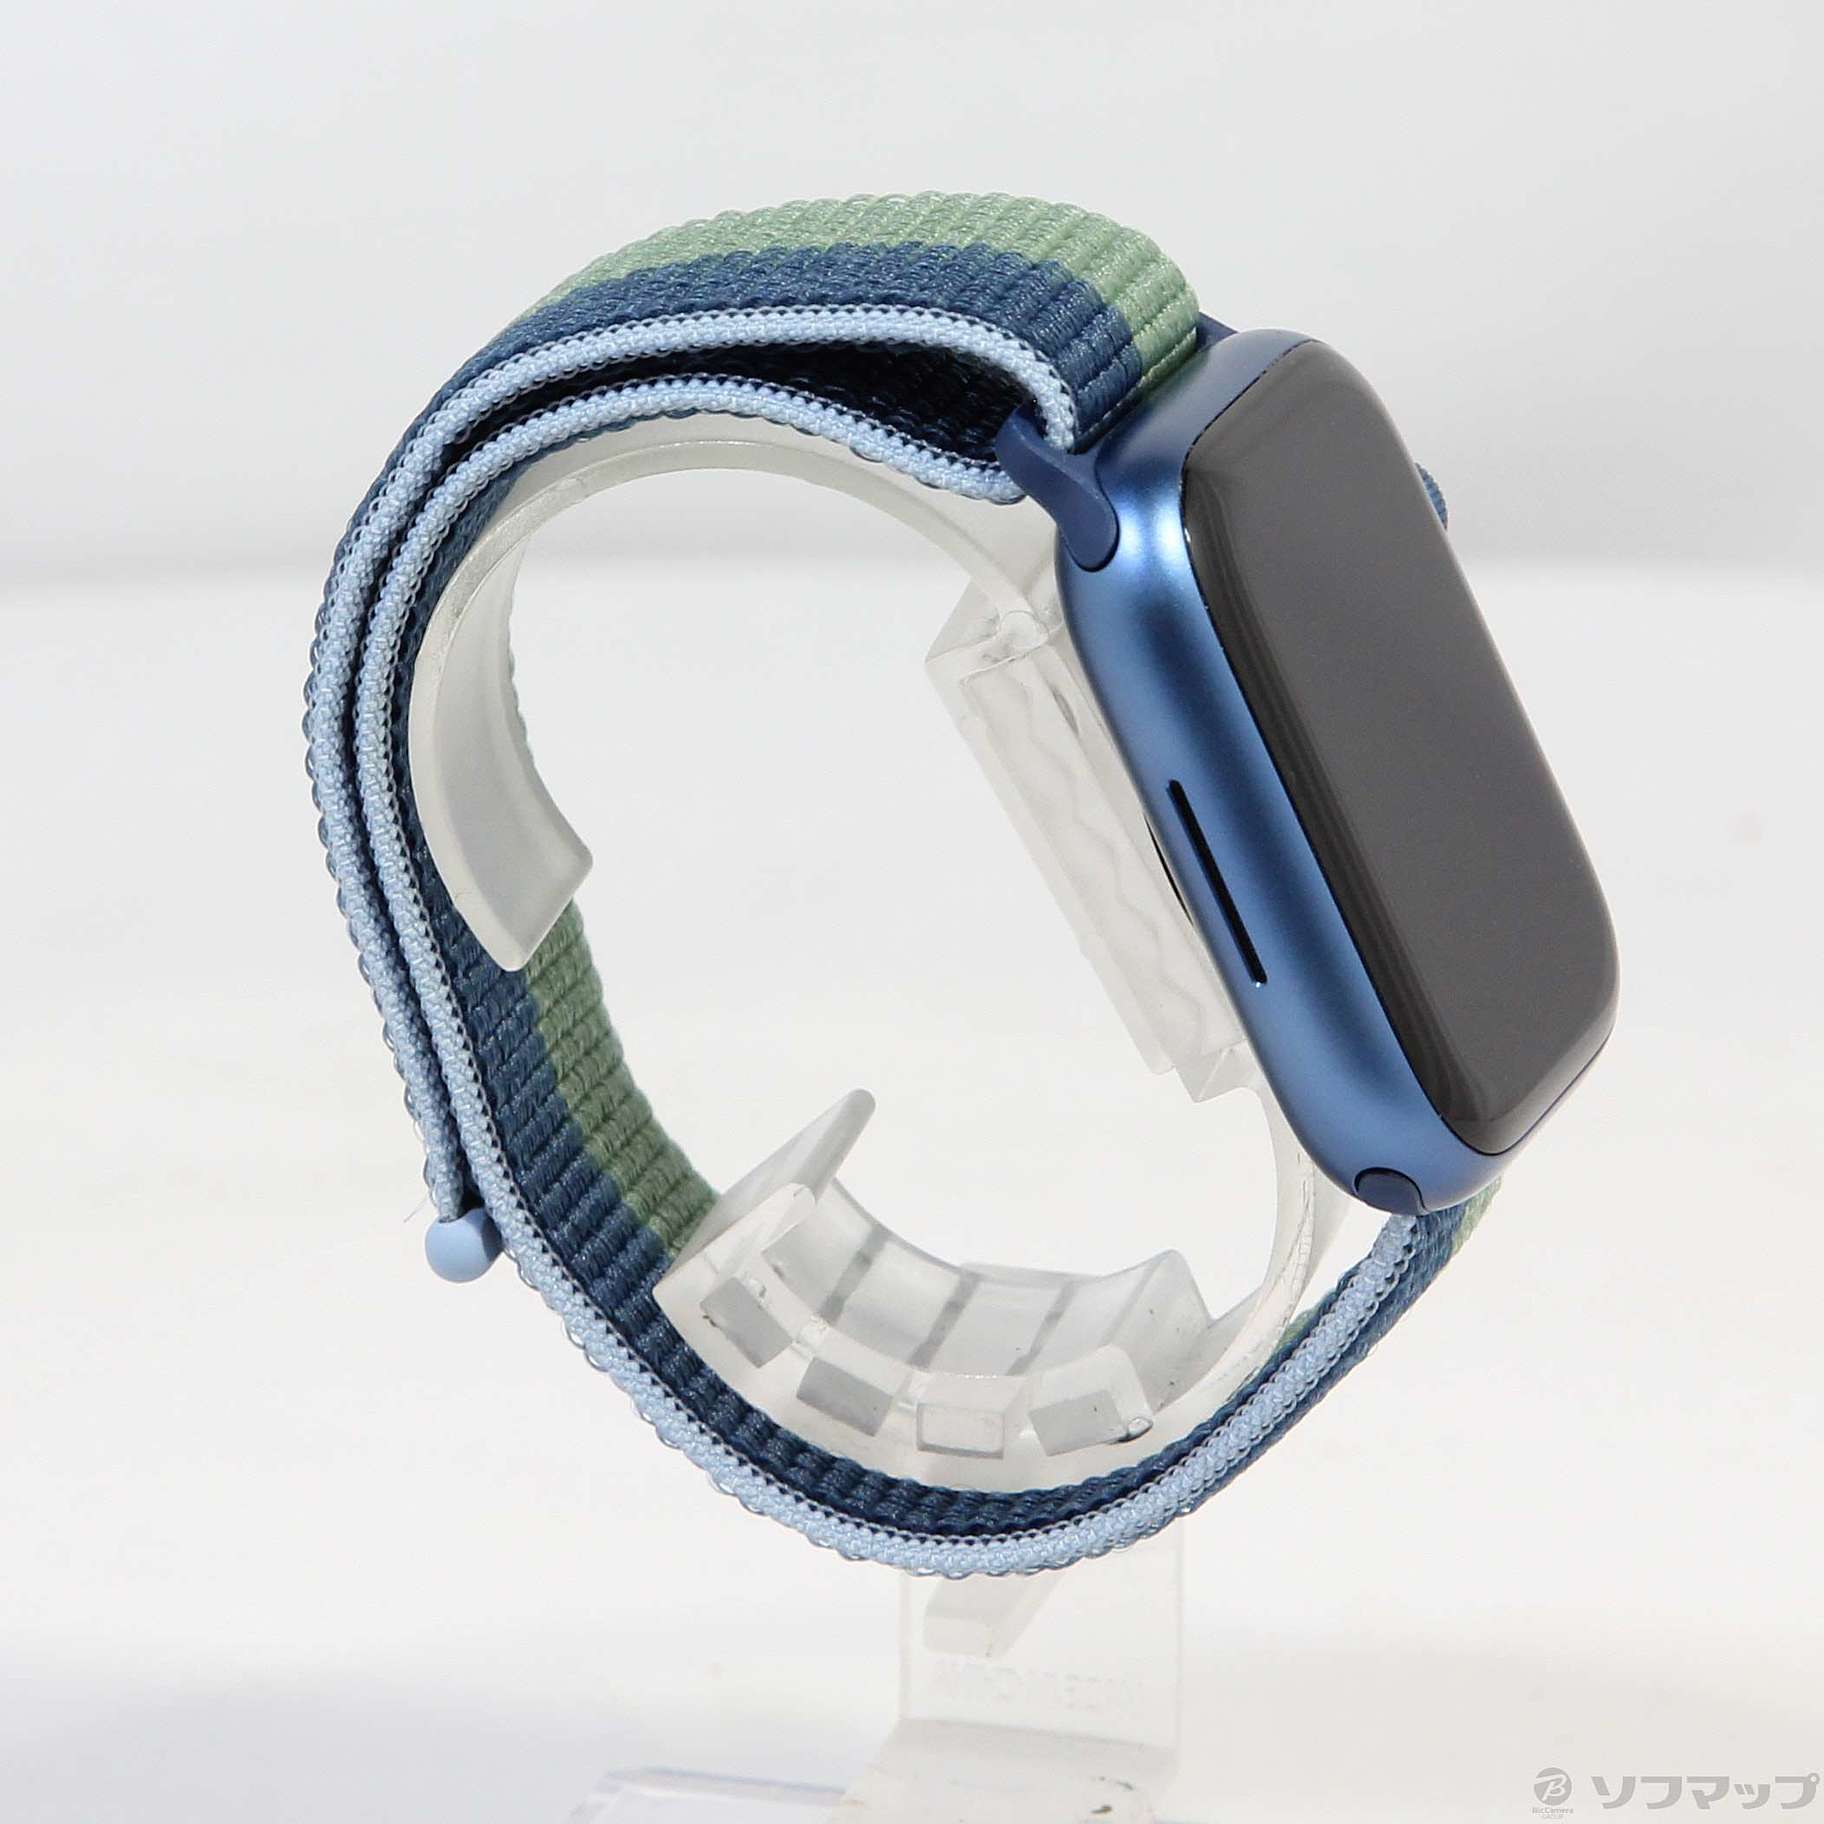 中古】Apple Watch Series 7 GPS 45mm ブルーアルミニウムケース